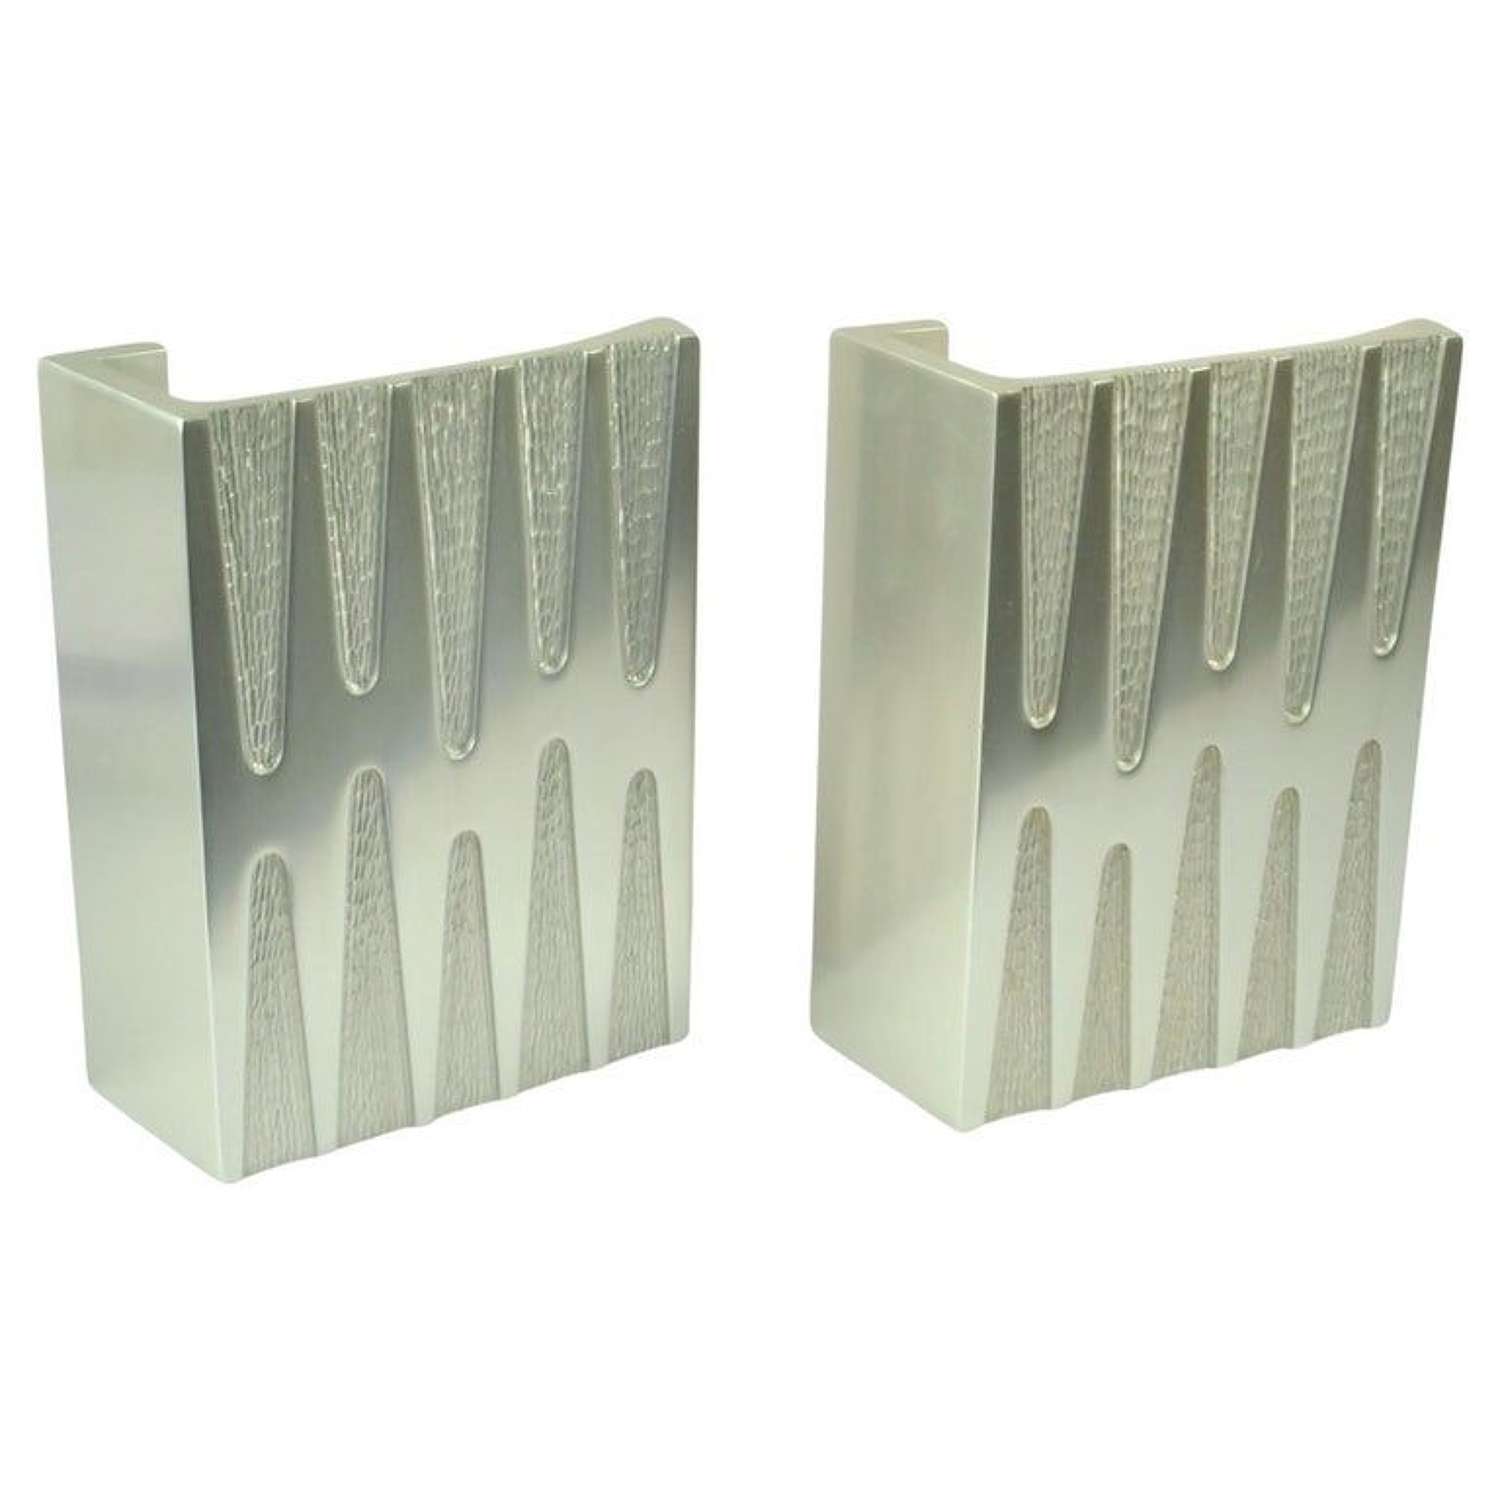 Pair of Architectural Aluminium Relief Push Pull Door Handles